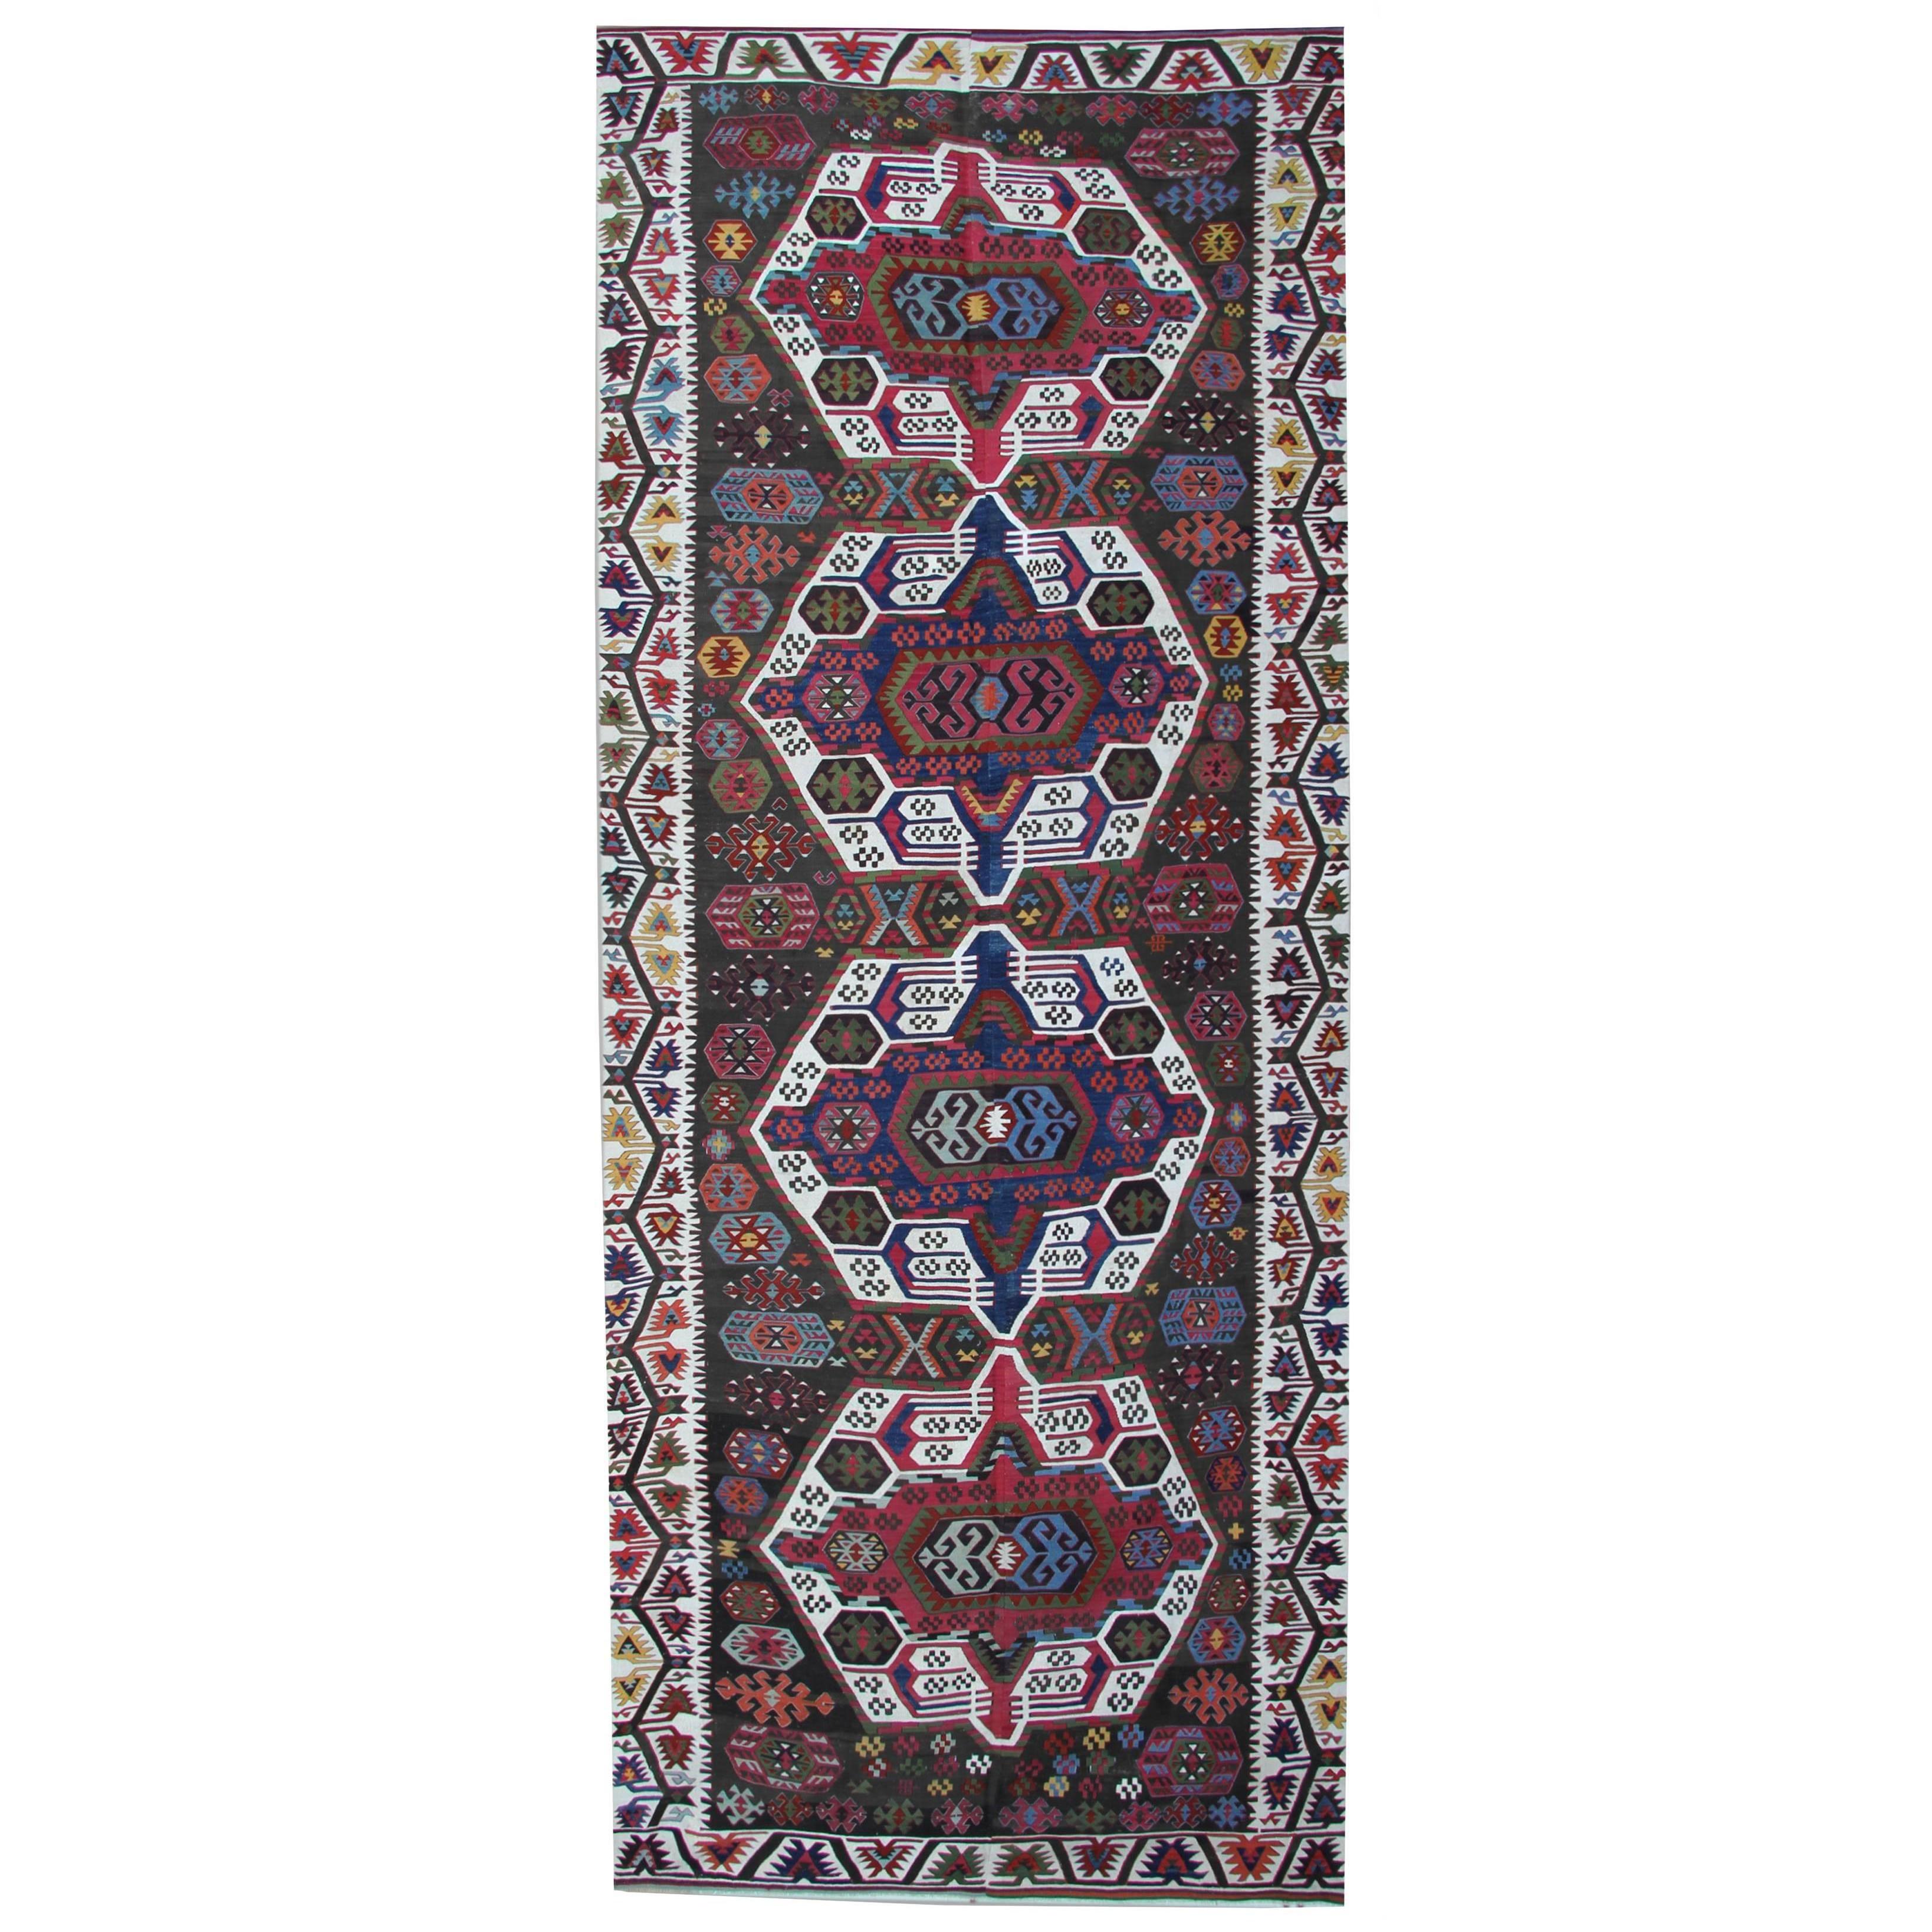 Tapis Kilim turcs anciens de qualité tapis de couloir, tapis géométrique fait main